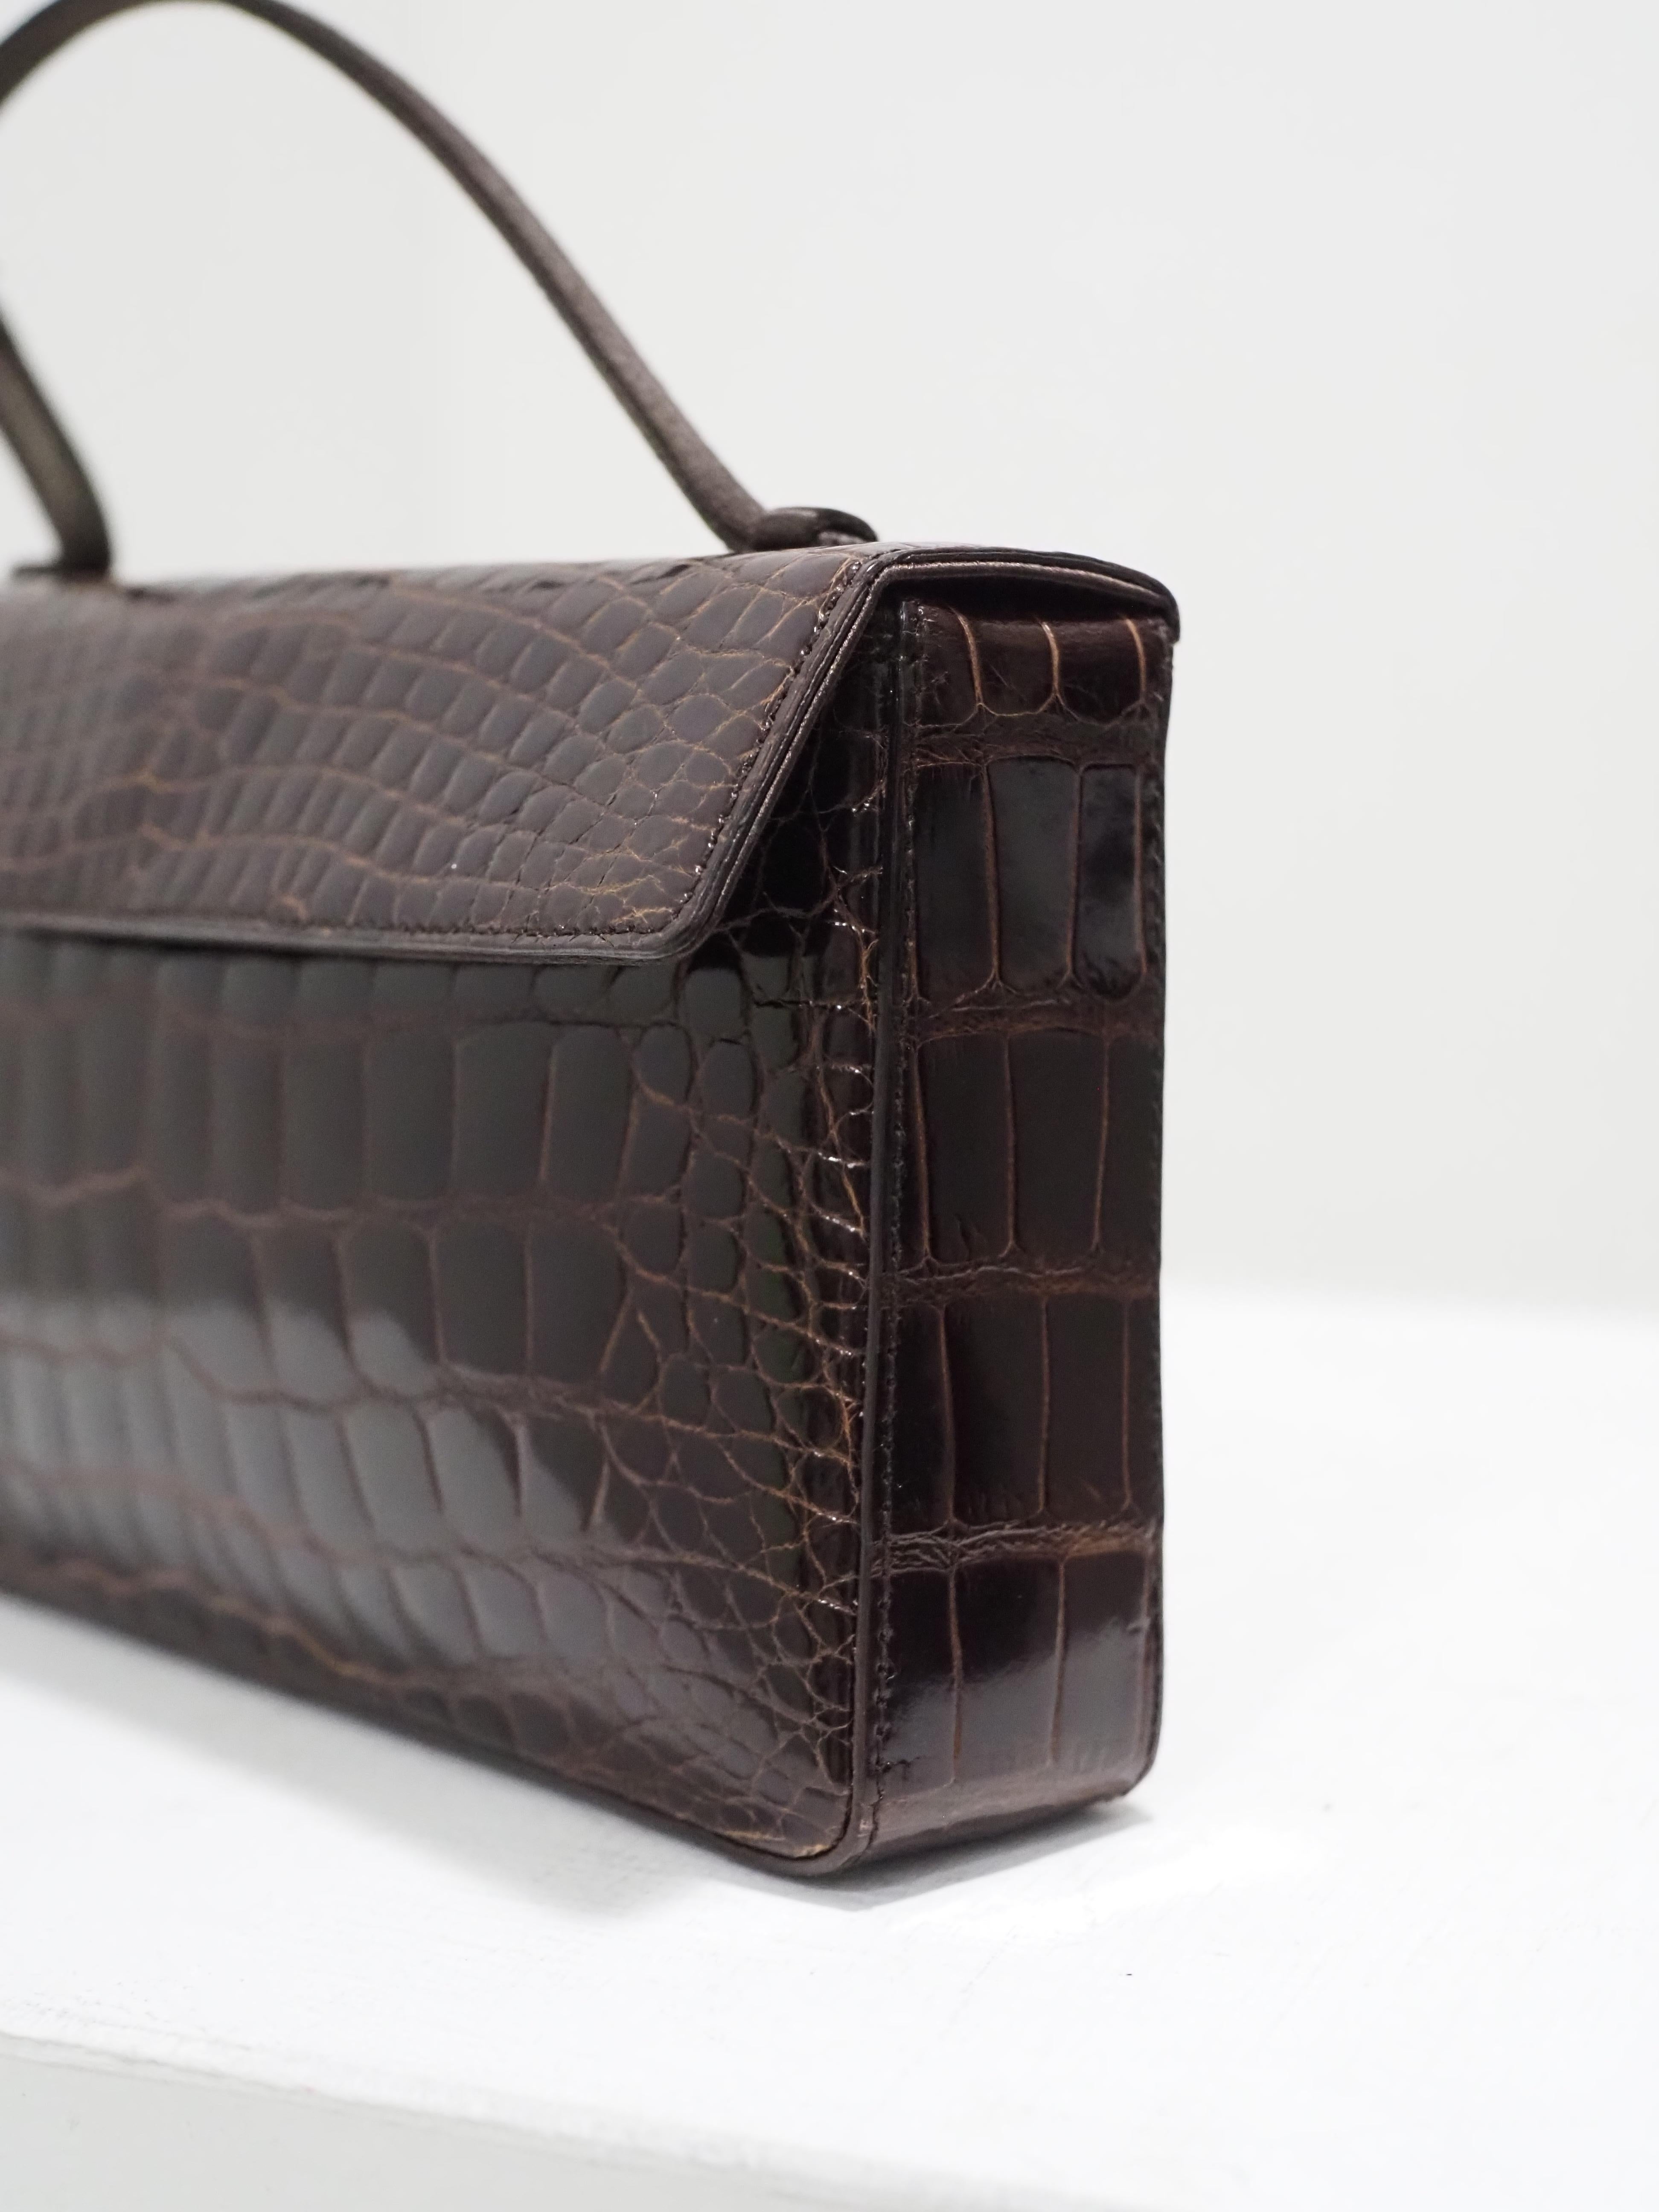 Prada brown croco leather small handbag 4